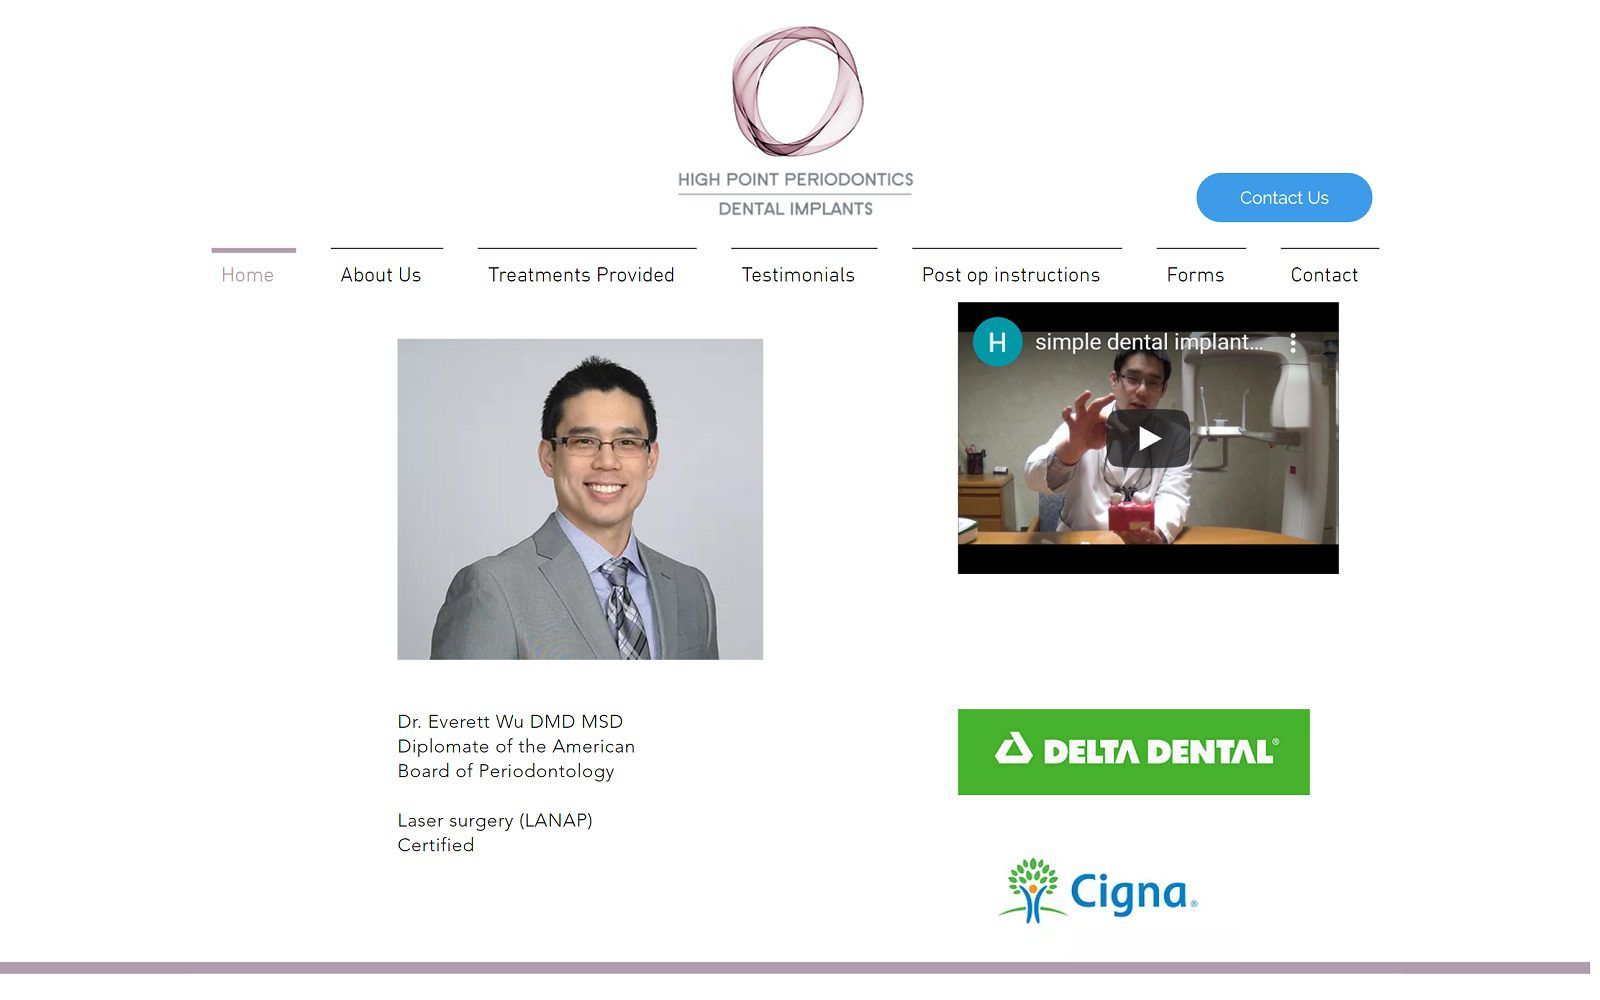 The screenshot of high point periodontics dr. Everett wu website